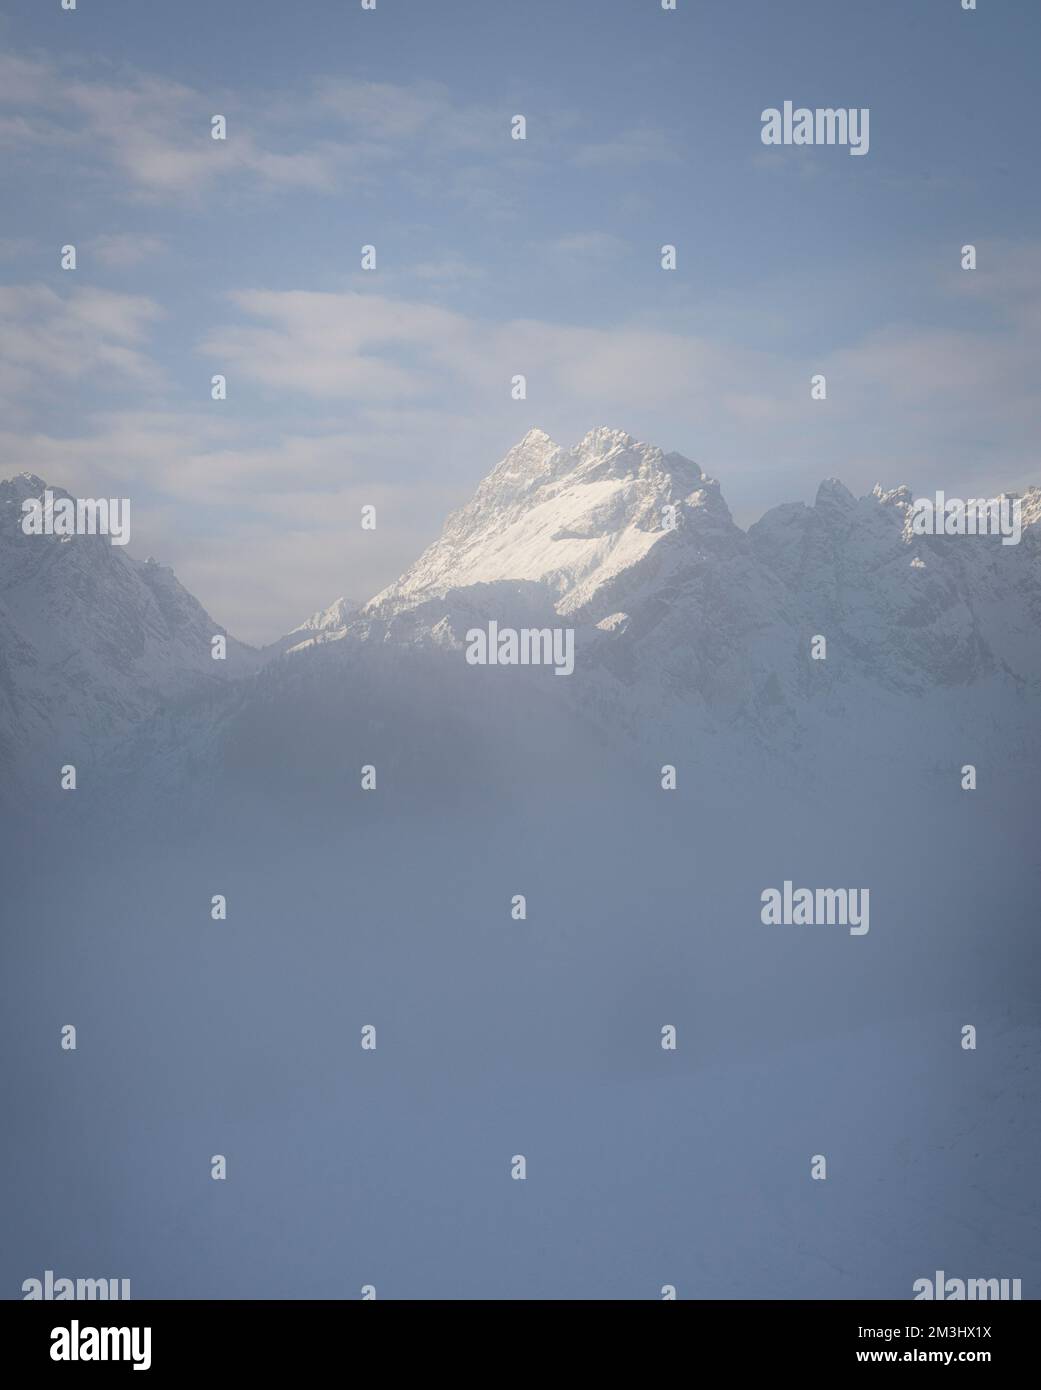 el pico nevado de una montaña emerge de la niebla matutina en un paisaje alpino Foto de stock